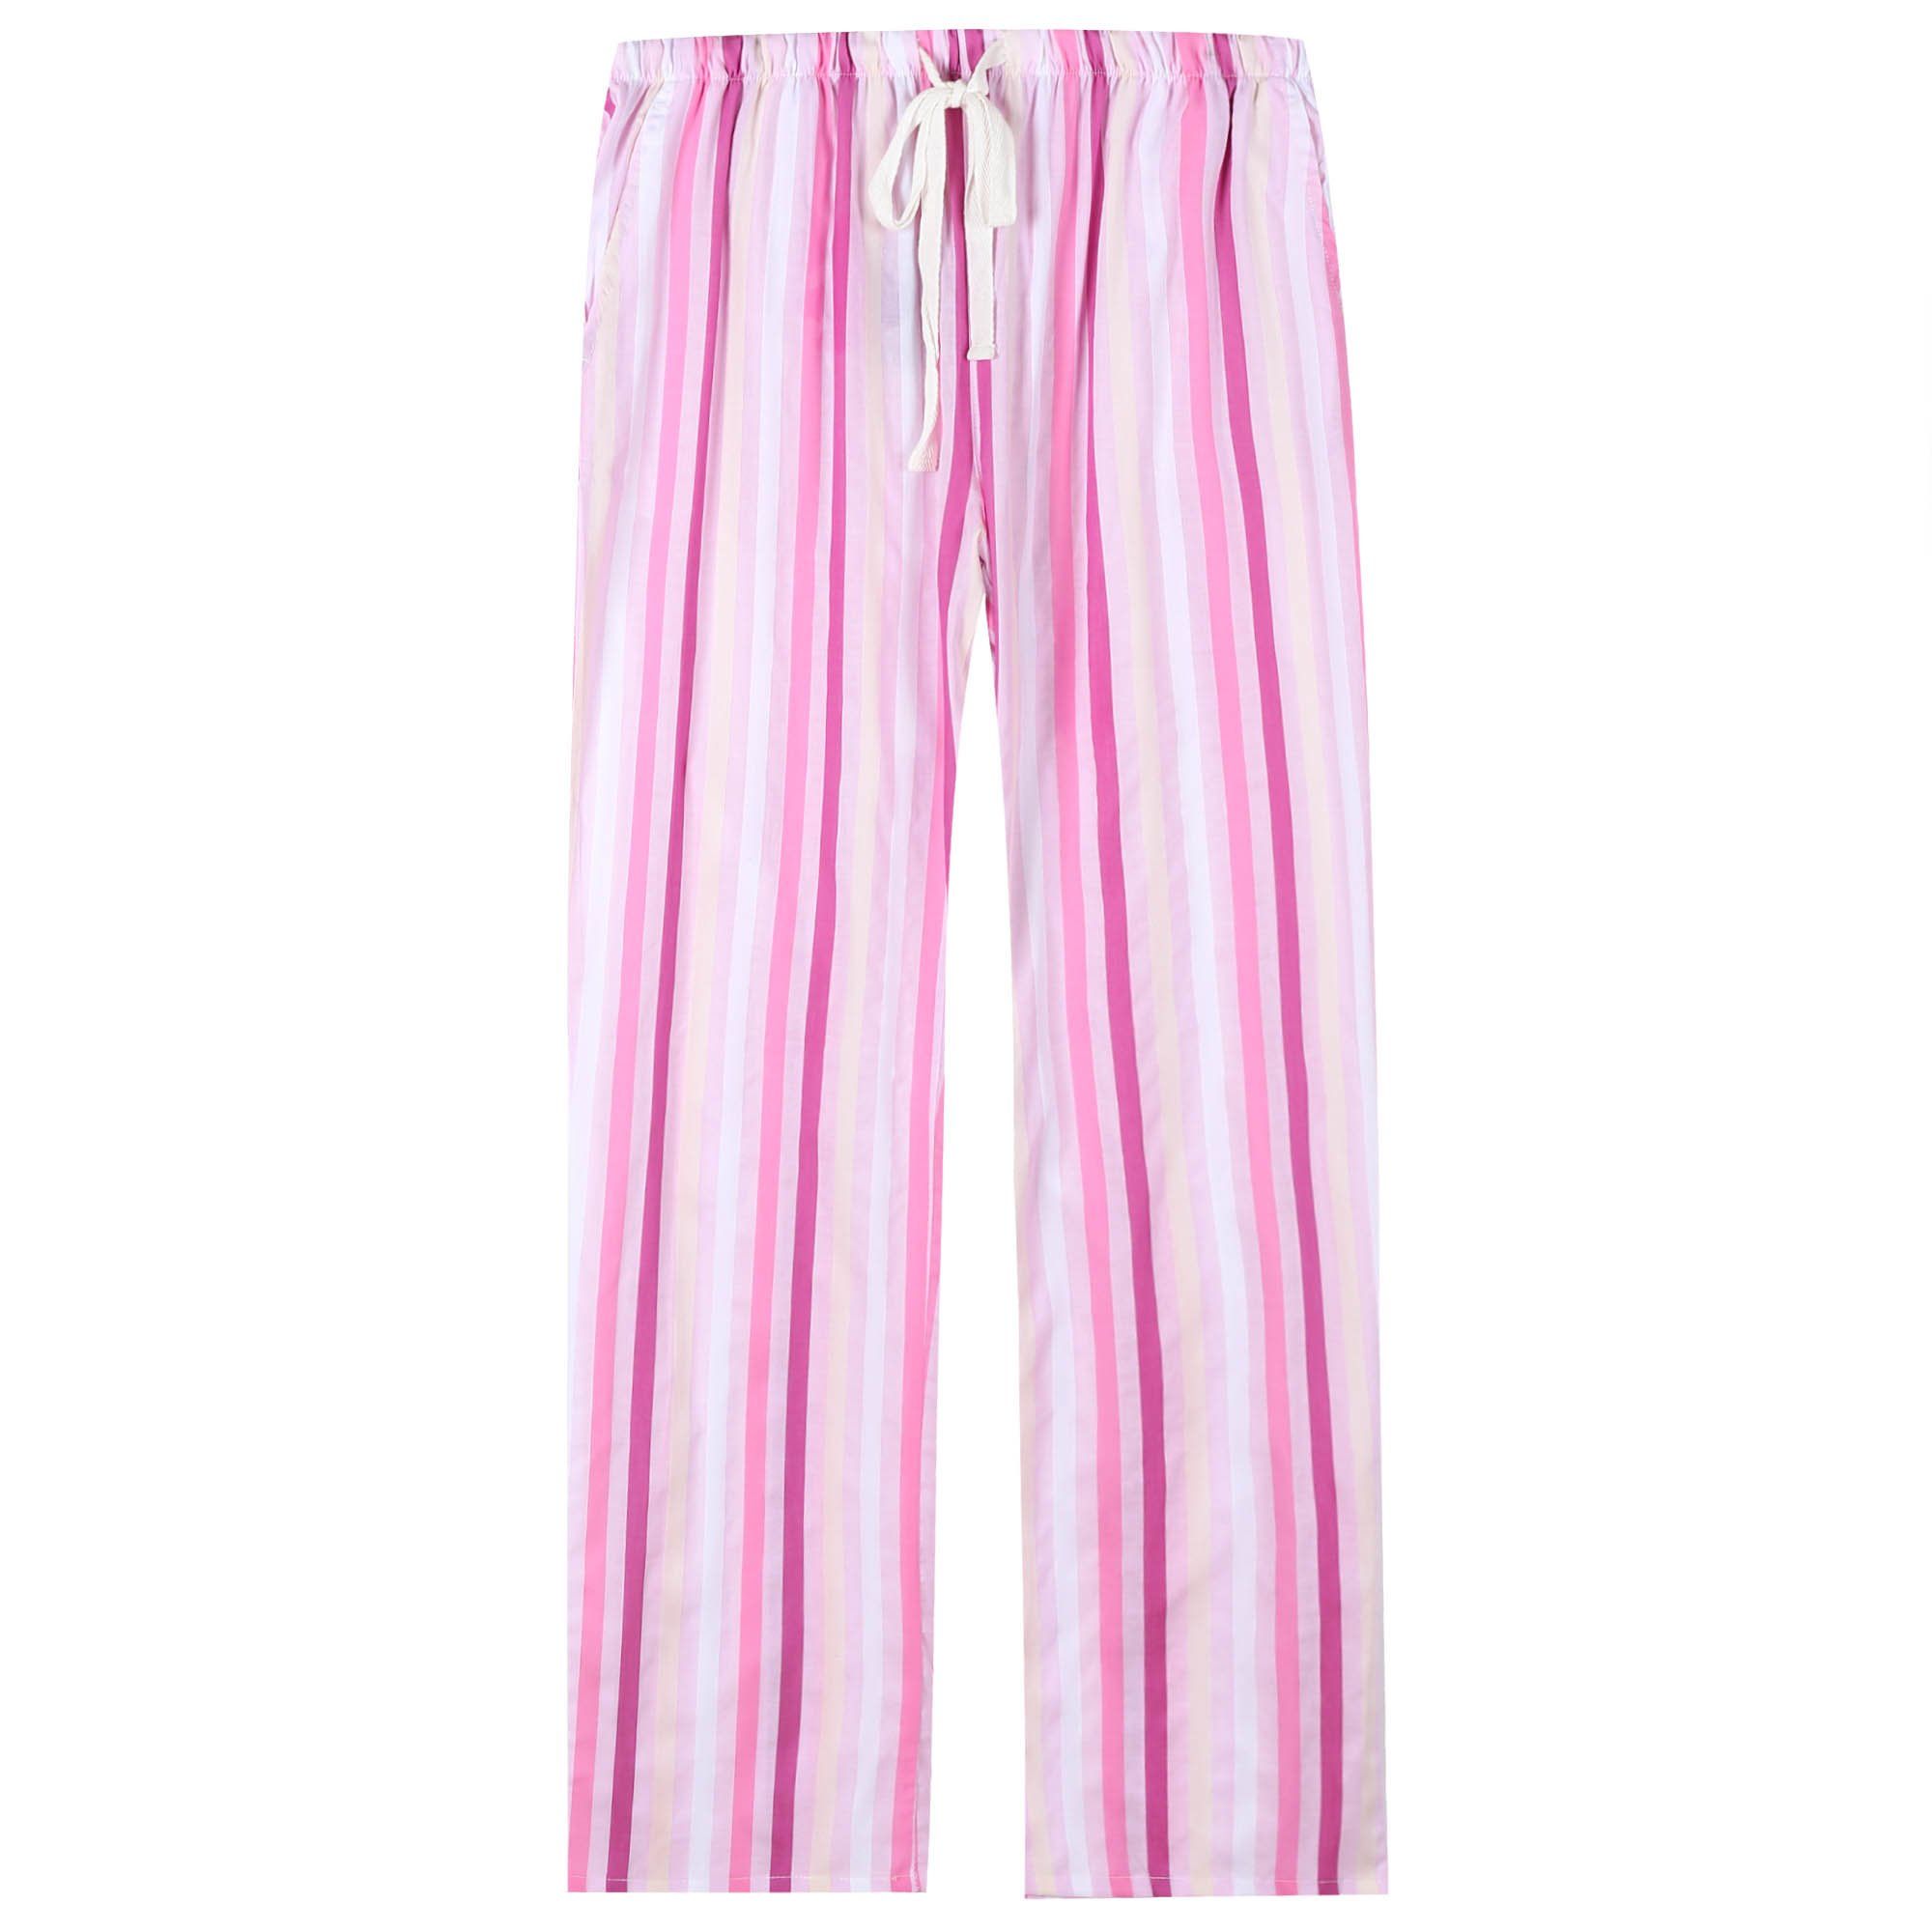 Pajama Pants for Women - 100% Cotton Lounge Pants Women PJ Pants